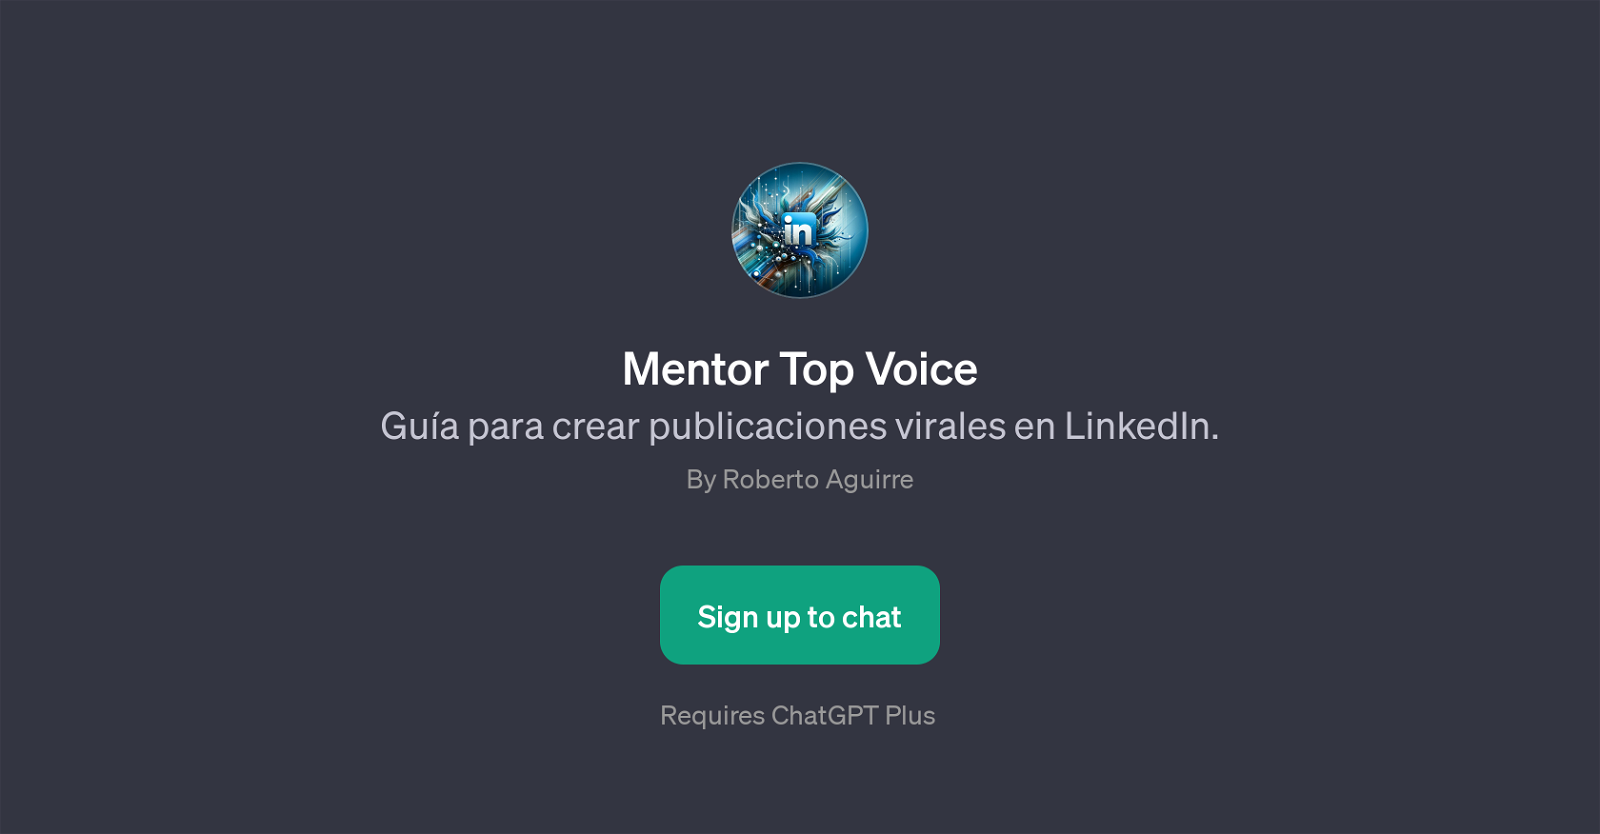 Mentor Top Voice website